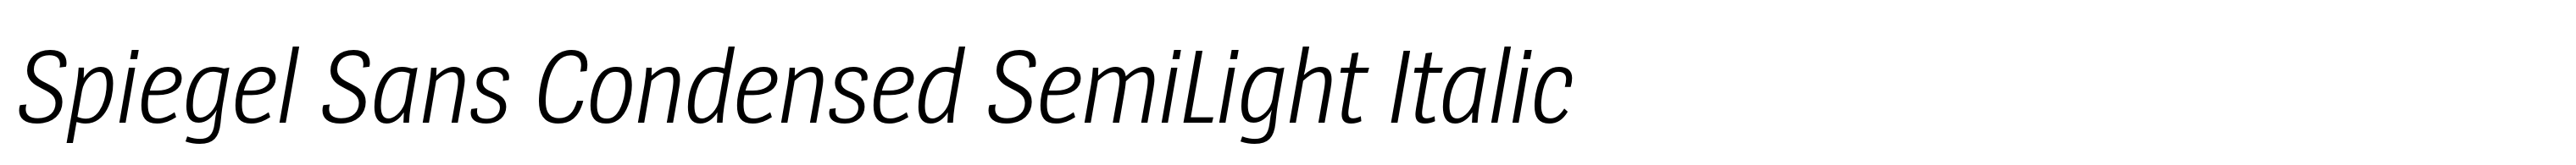 Spiegel Sans Condensed SemiLight Italic